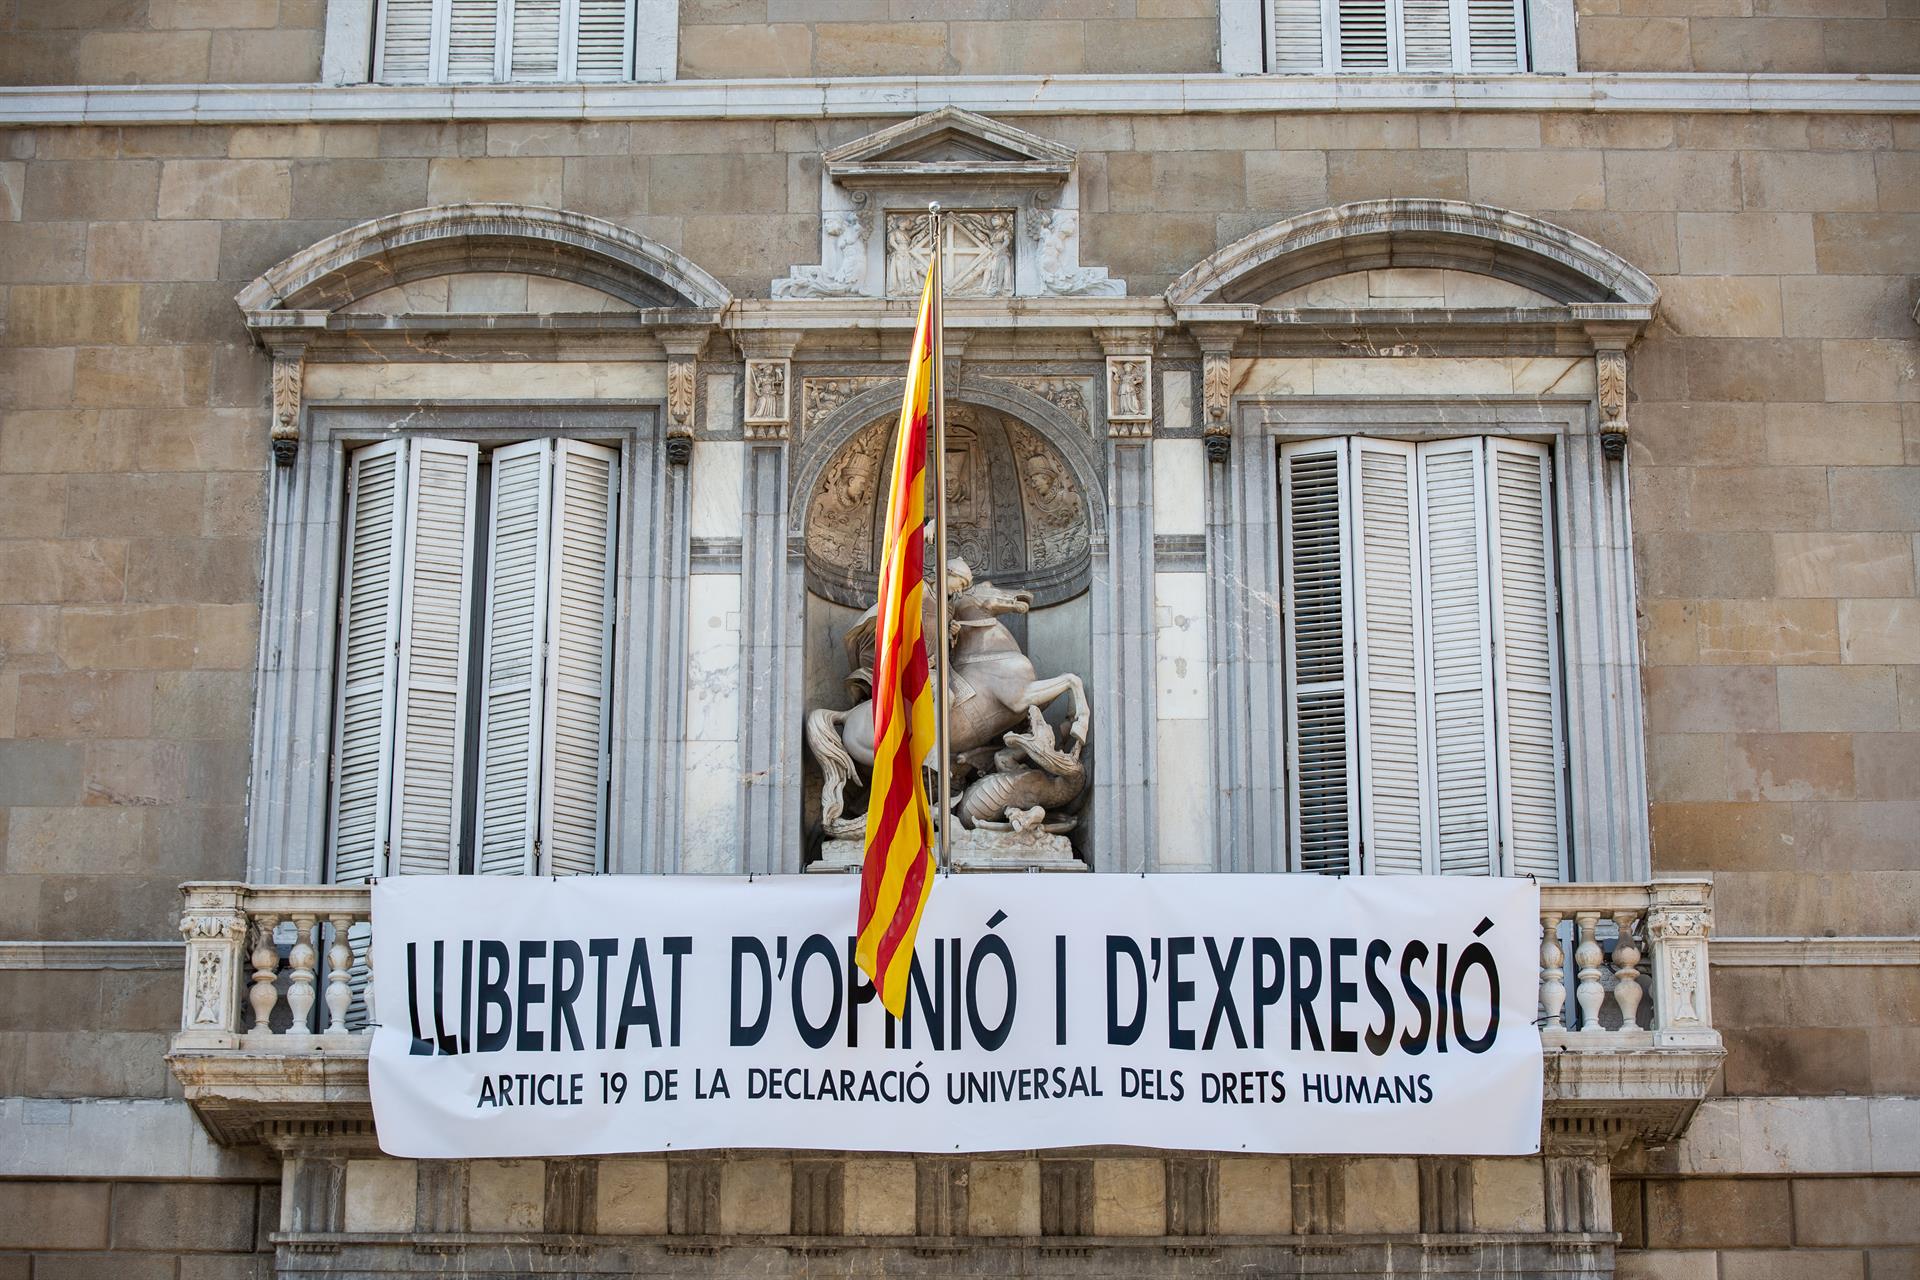 Torra cuelga otra pancarta en la fachada de la Generalitat por la «libertad de opinión y expresión»